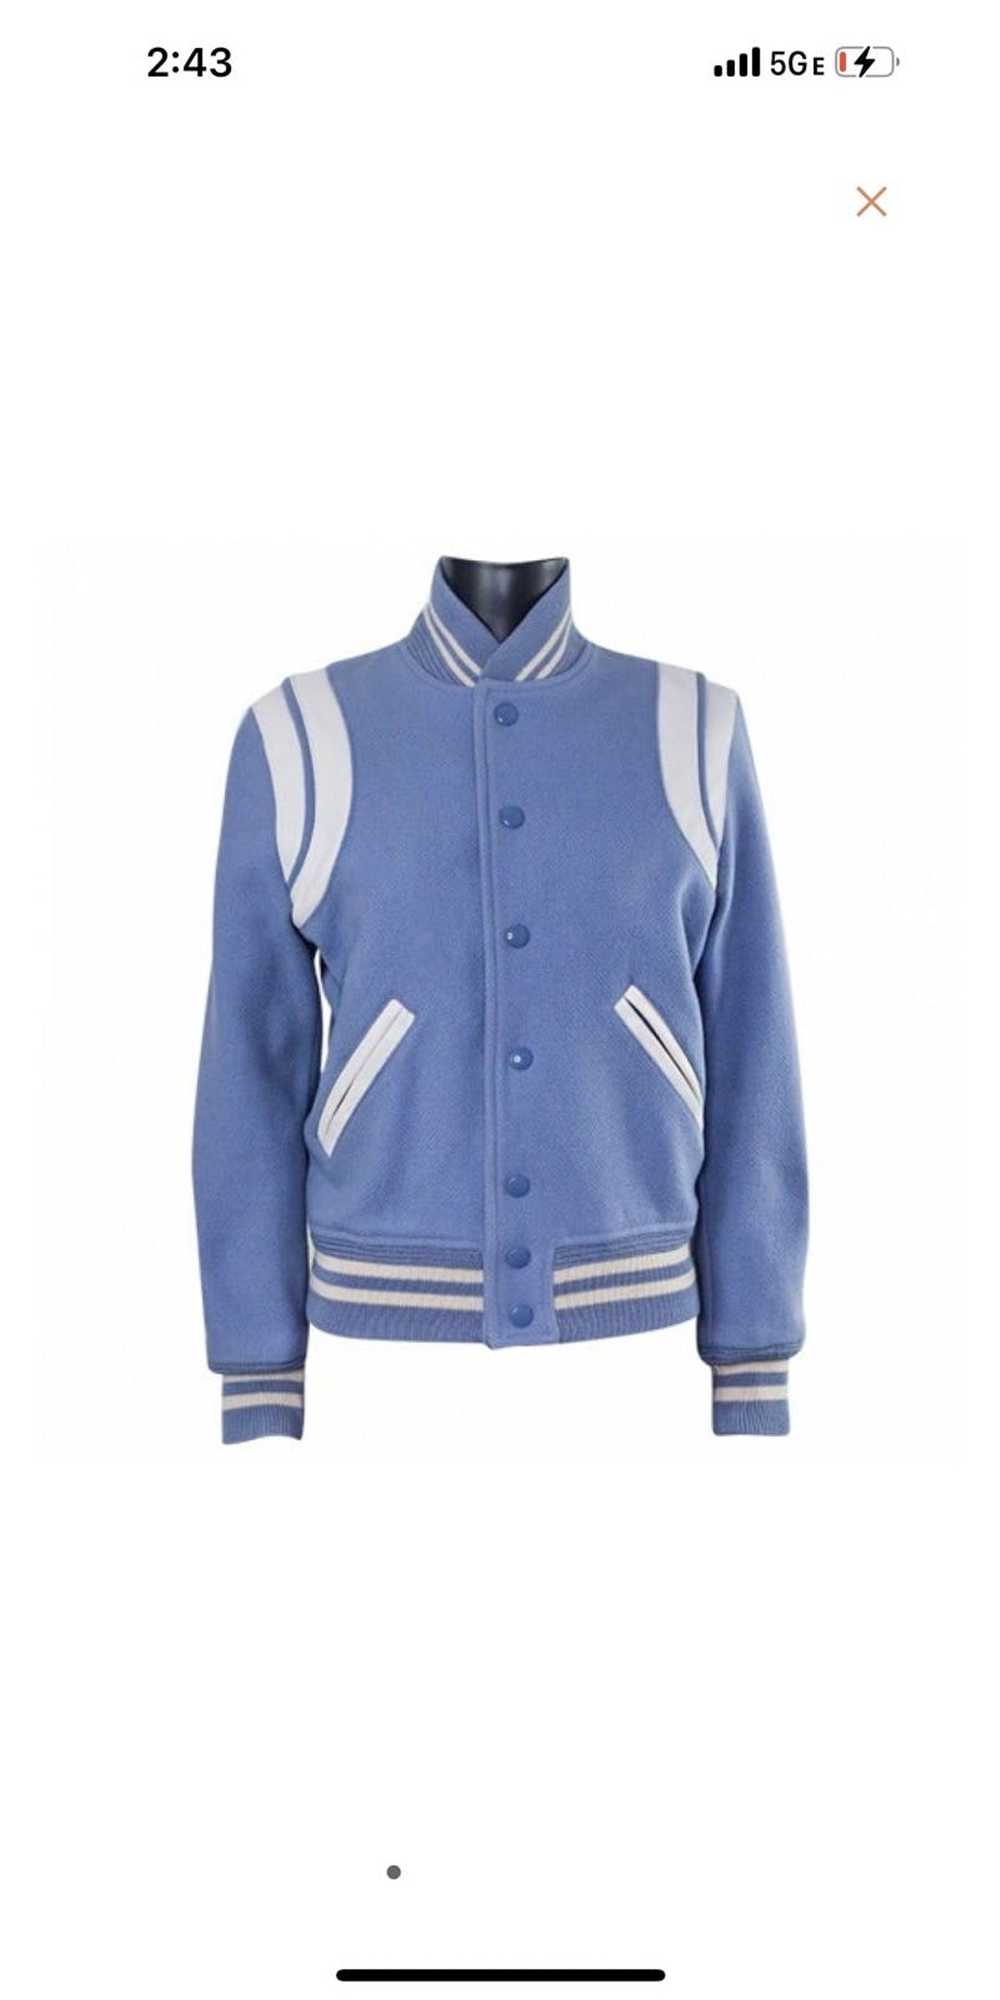 Yves Saint Laurent Saint Laurent teddy jacket - image 1